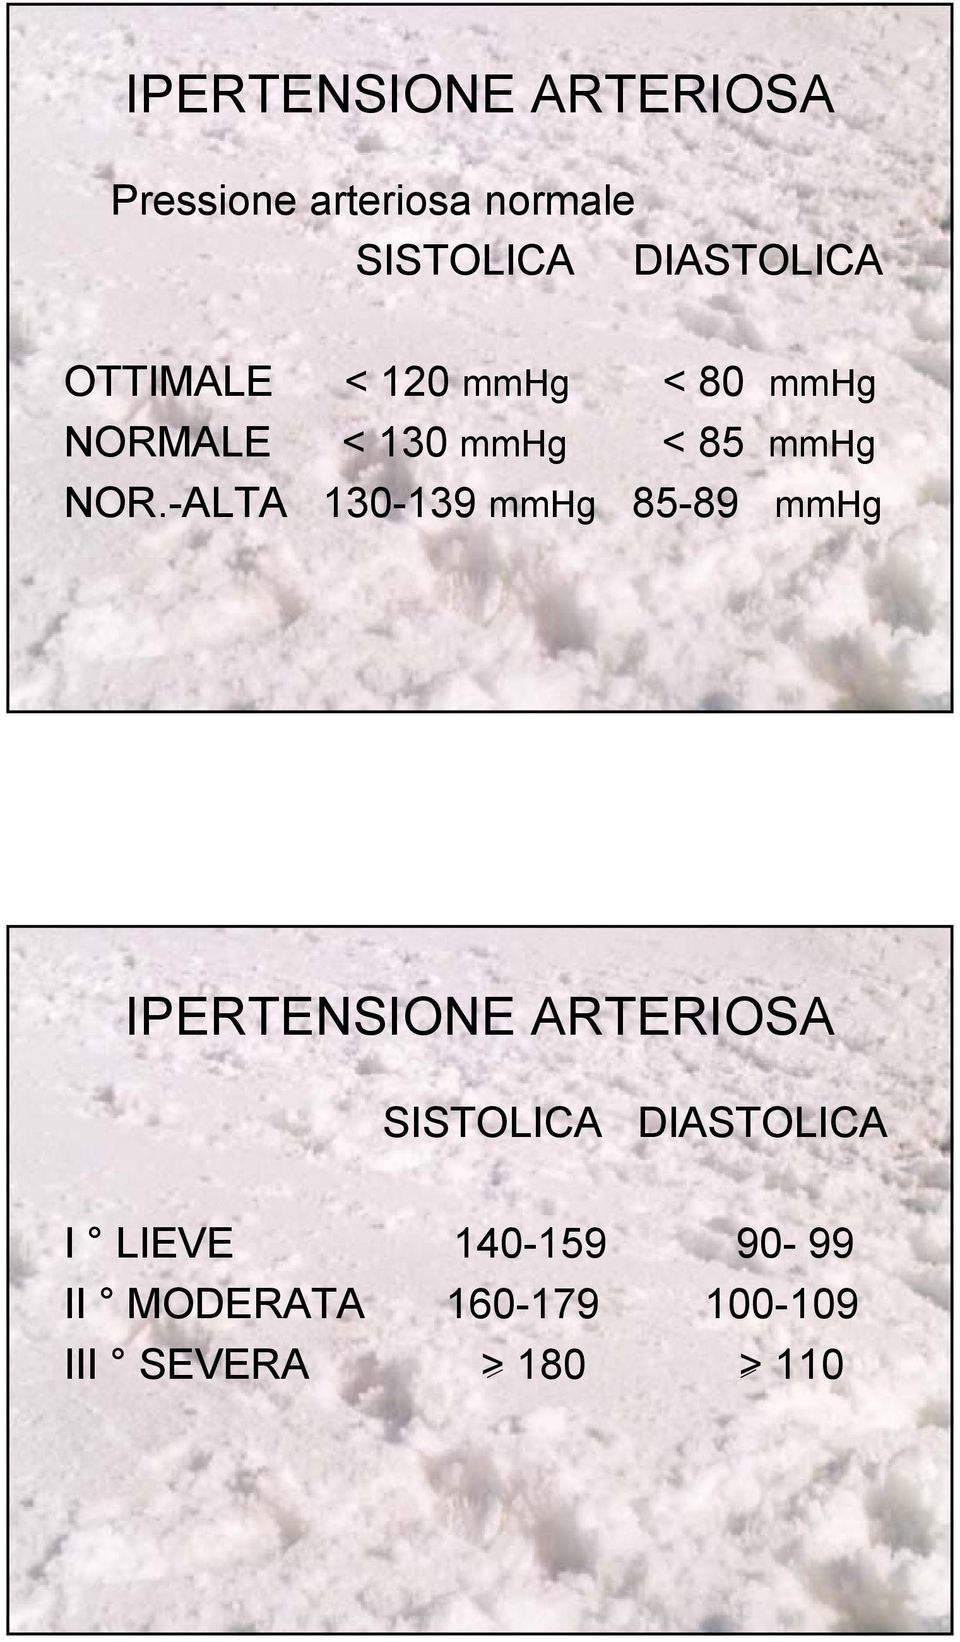 NOR.-ALTA 130-139 mmhg 85-89 mmhg IPERTENSIONE ARTERIOSA SISTOLICA